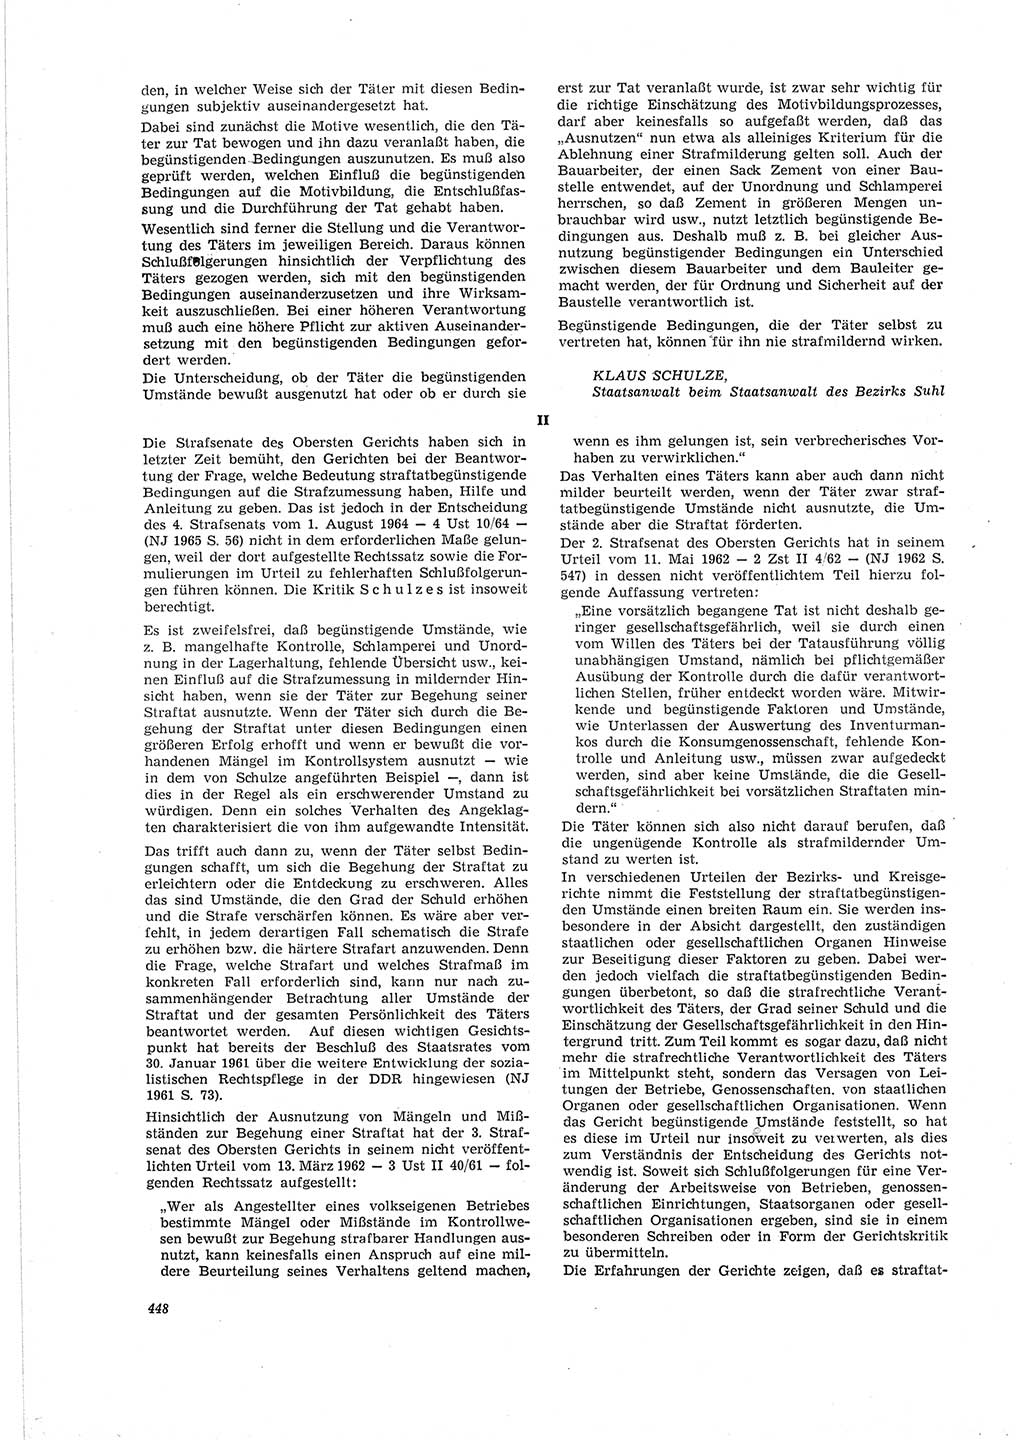 Neue Justiz (NJ), Zeitschrift für Recht und Rechtswissenschaft [Deutsche Demokratische Republik (DDR)], 19. Jahrgang 1965, Seite 448 (NJ DDR 1965, S. 448)